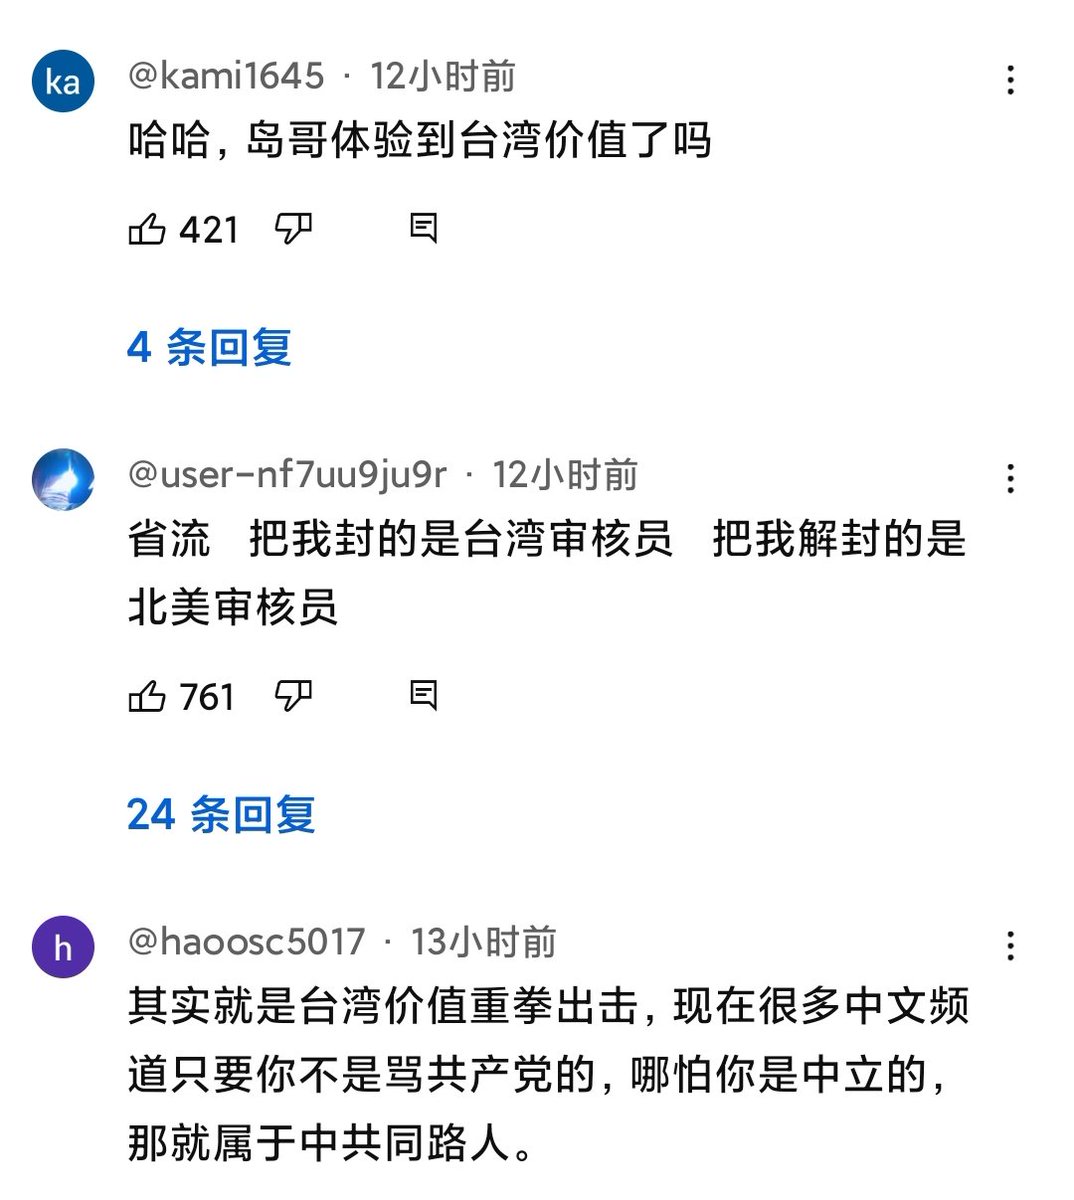 小岛因为吐槽了两期民进党，就被台湾审核员把收入给停了。 真是言论自由